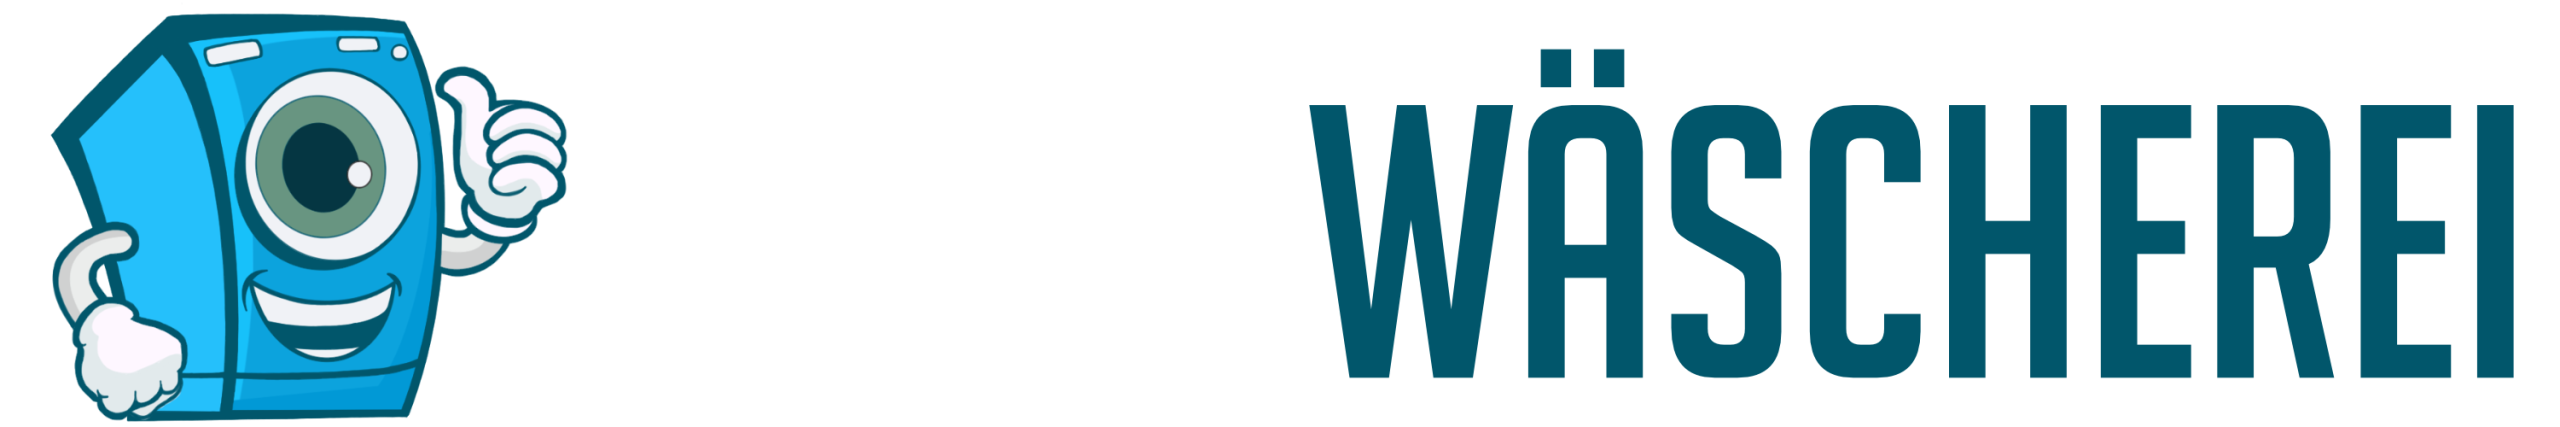 Logo 1 - White